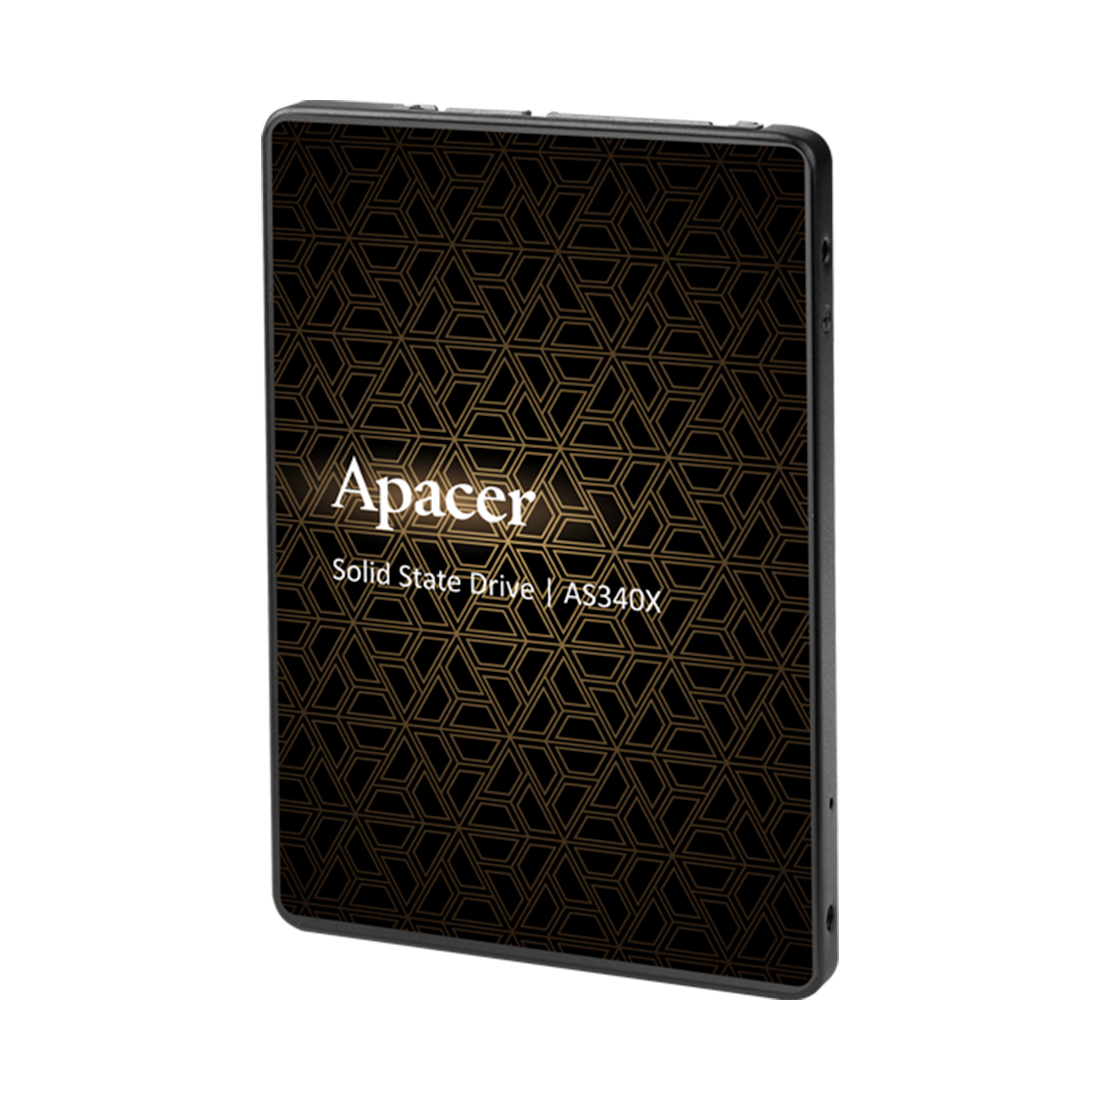 купить Твердотельный накопитель SSD Apacer AS340X 240GB SATA в Алматы